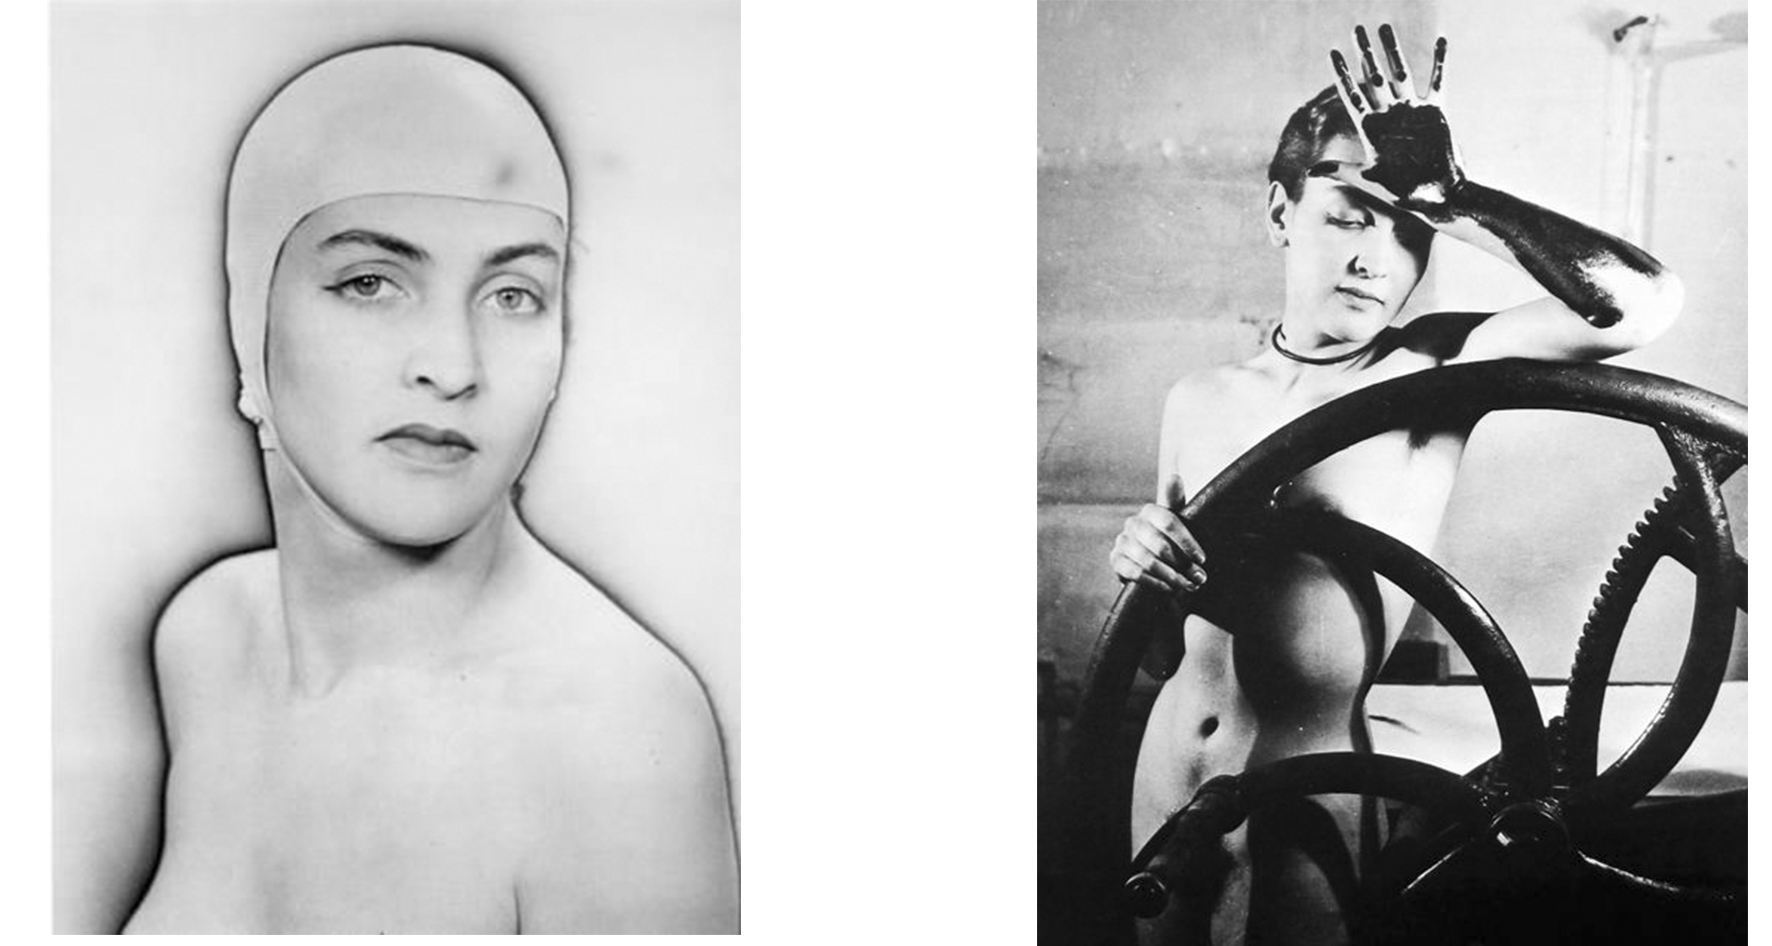 Storia della fotografia: Il Surrealismo di Man Ray e Brandt 1